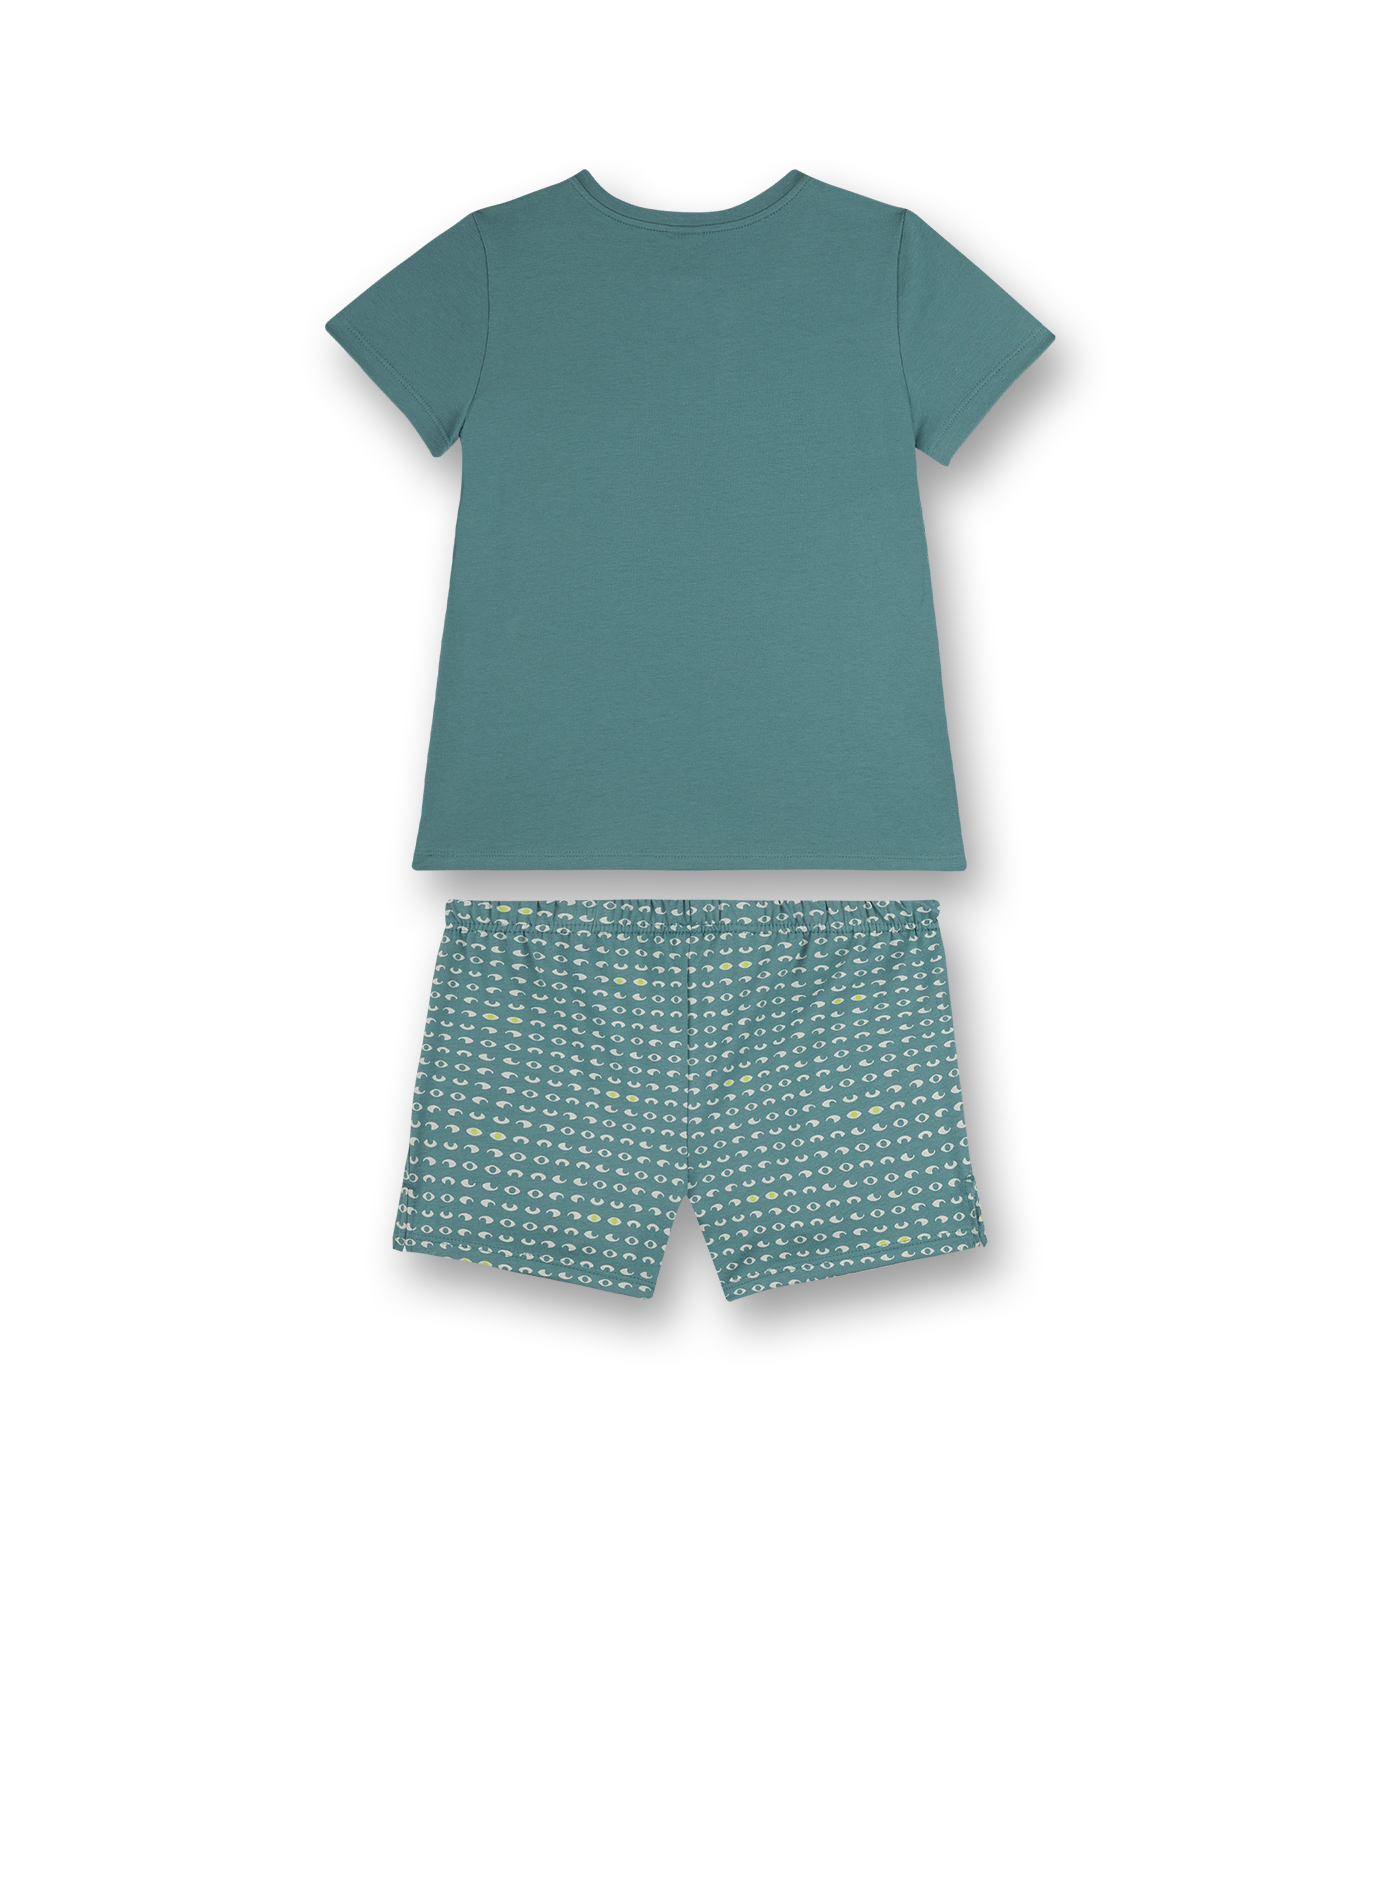 Sanetta Girls Pyjama o Arm blaumeliert Shorts bunt Gr 152 164 176  UVP 29,99 € 